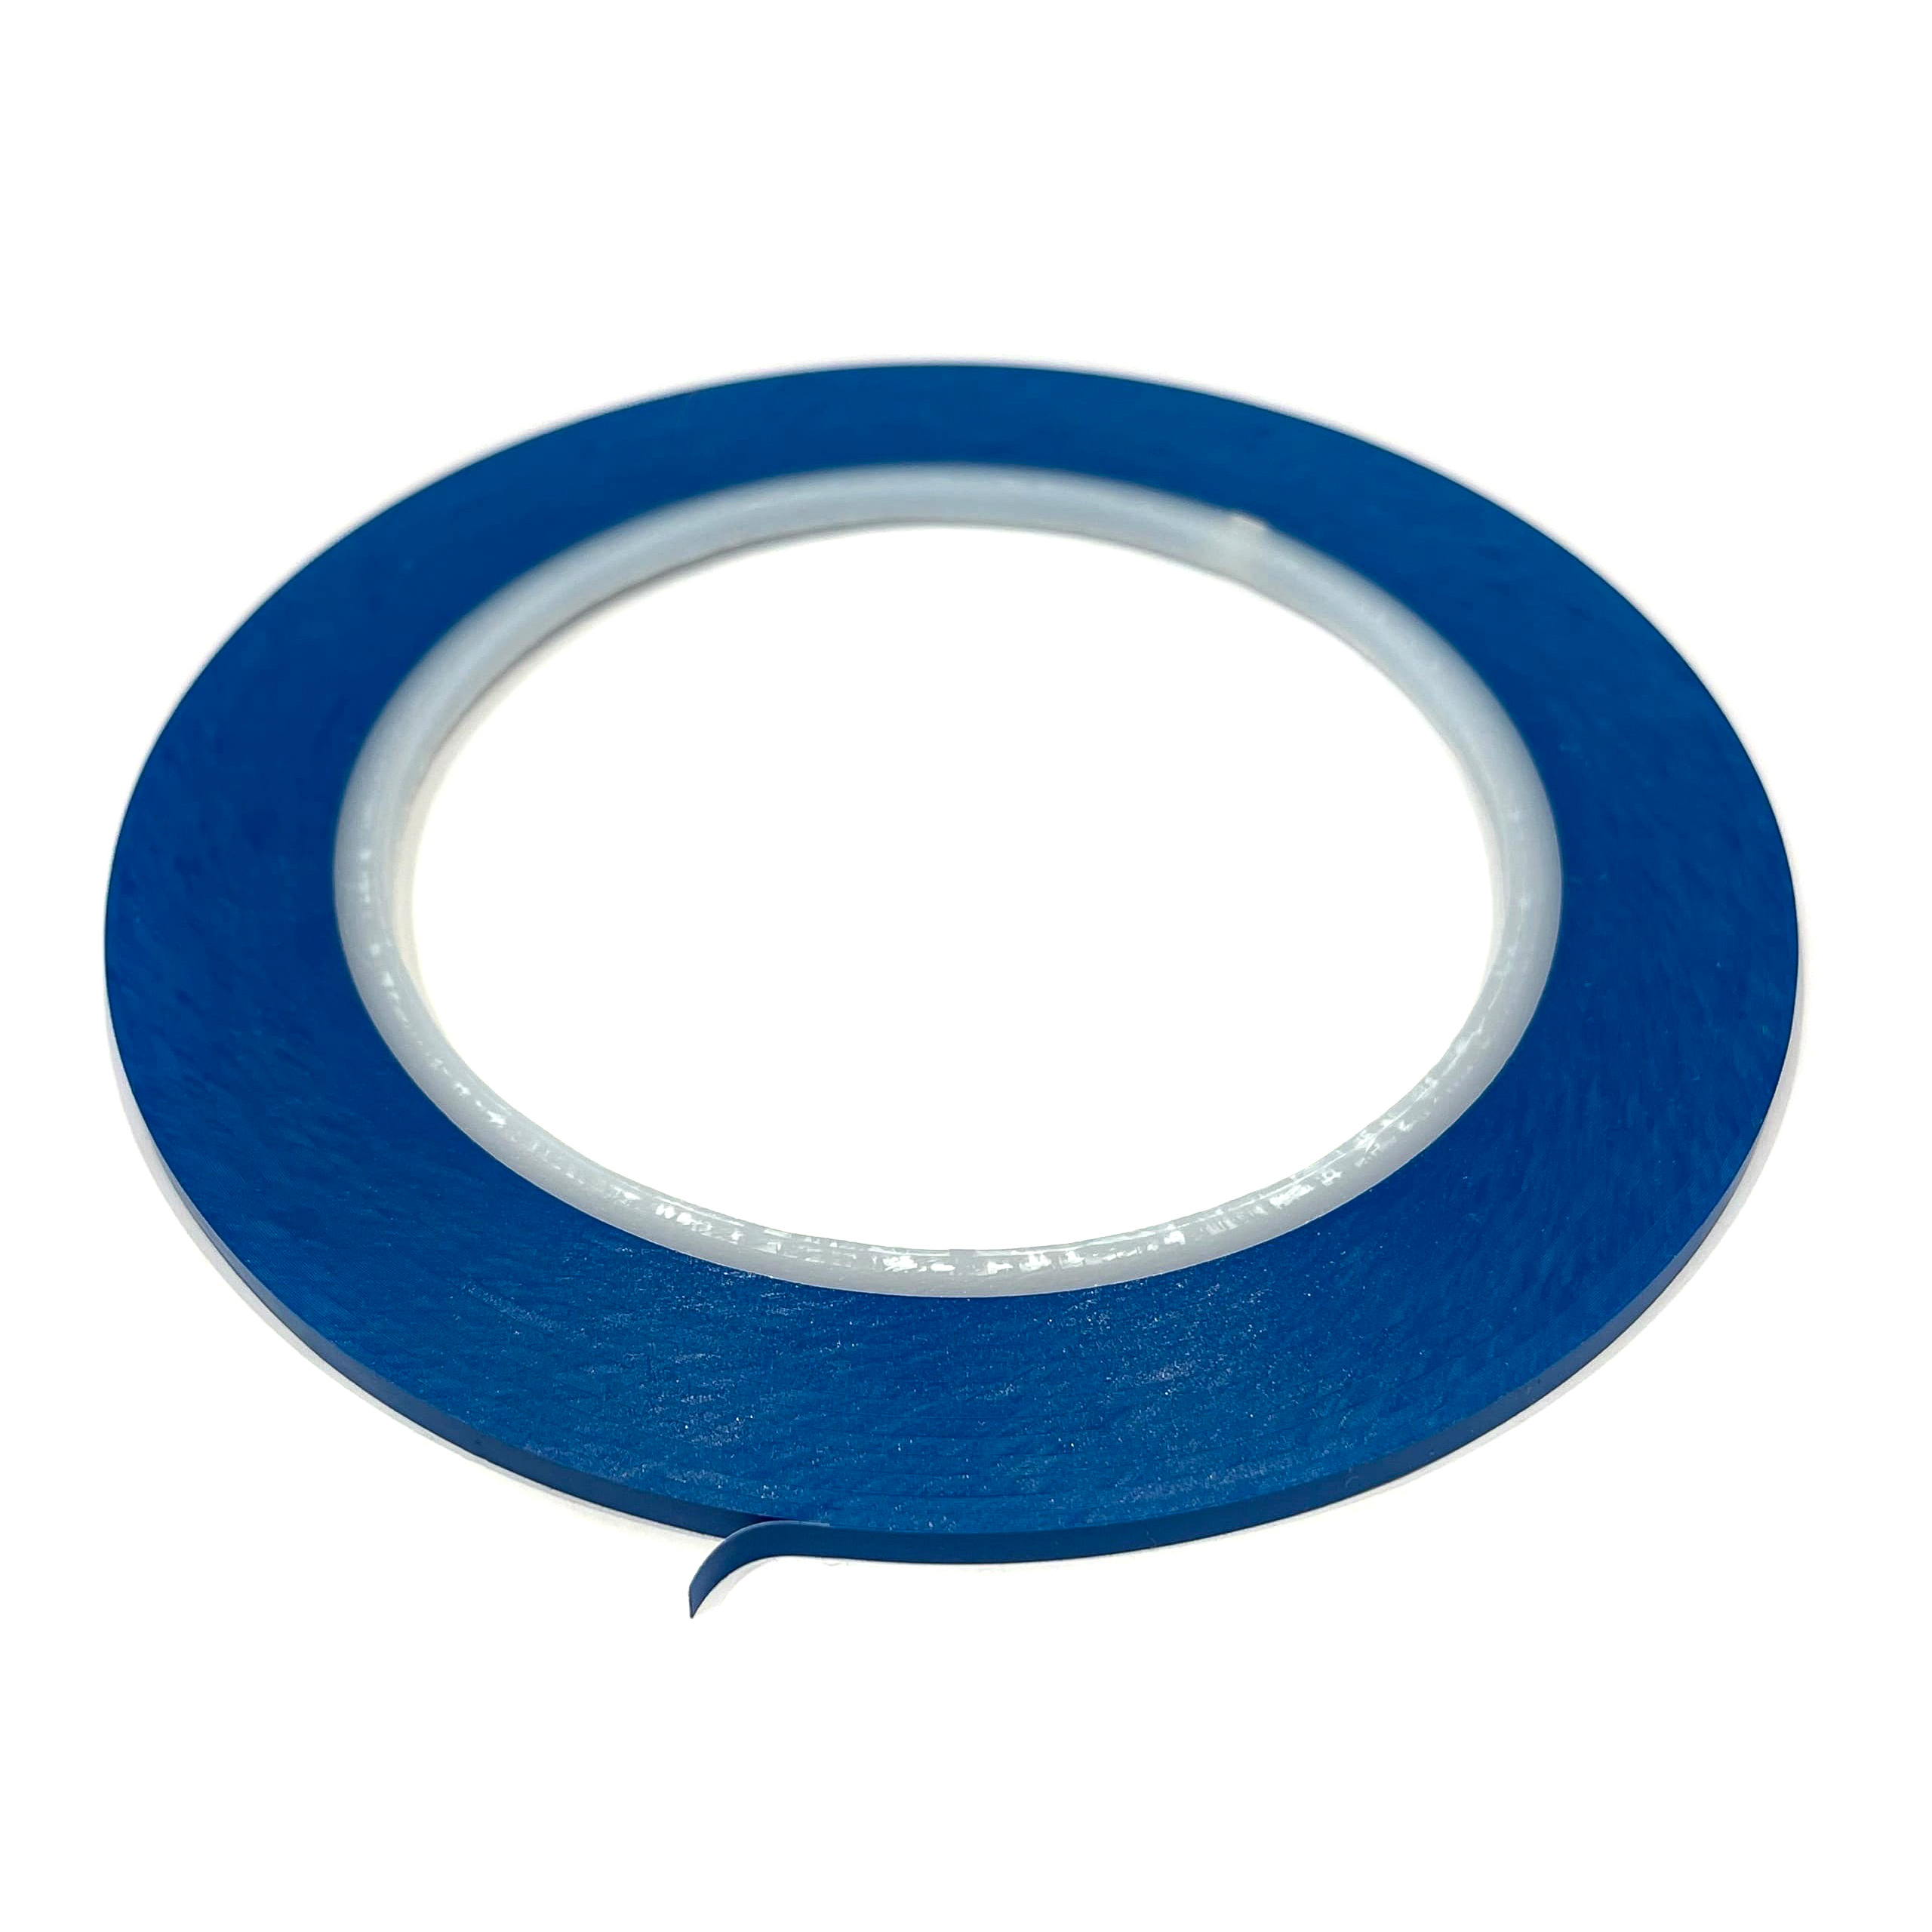 3-33Blue Imodelist Лента контурная (голубая), ширина 3 мм, длина 33 метра